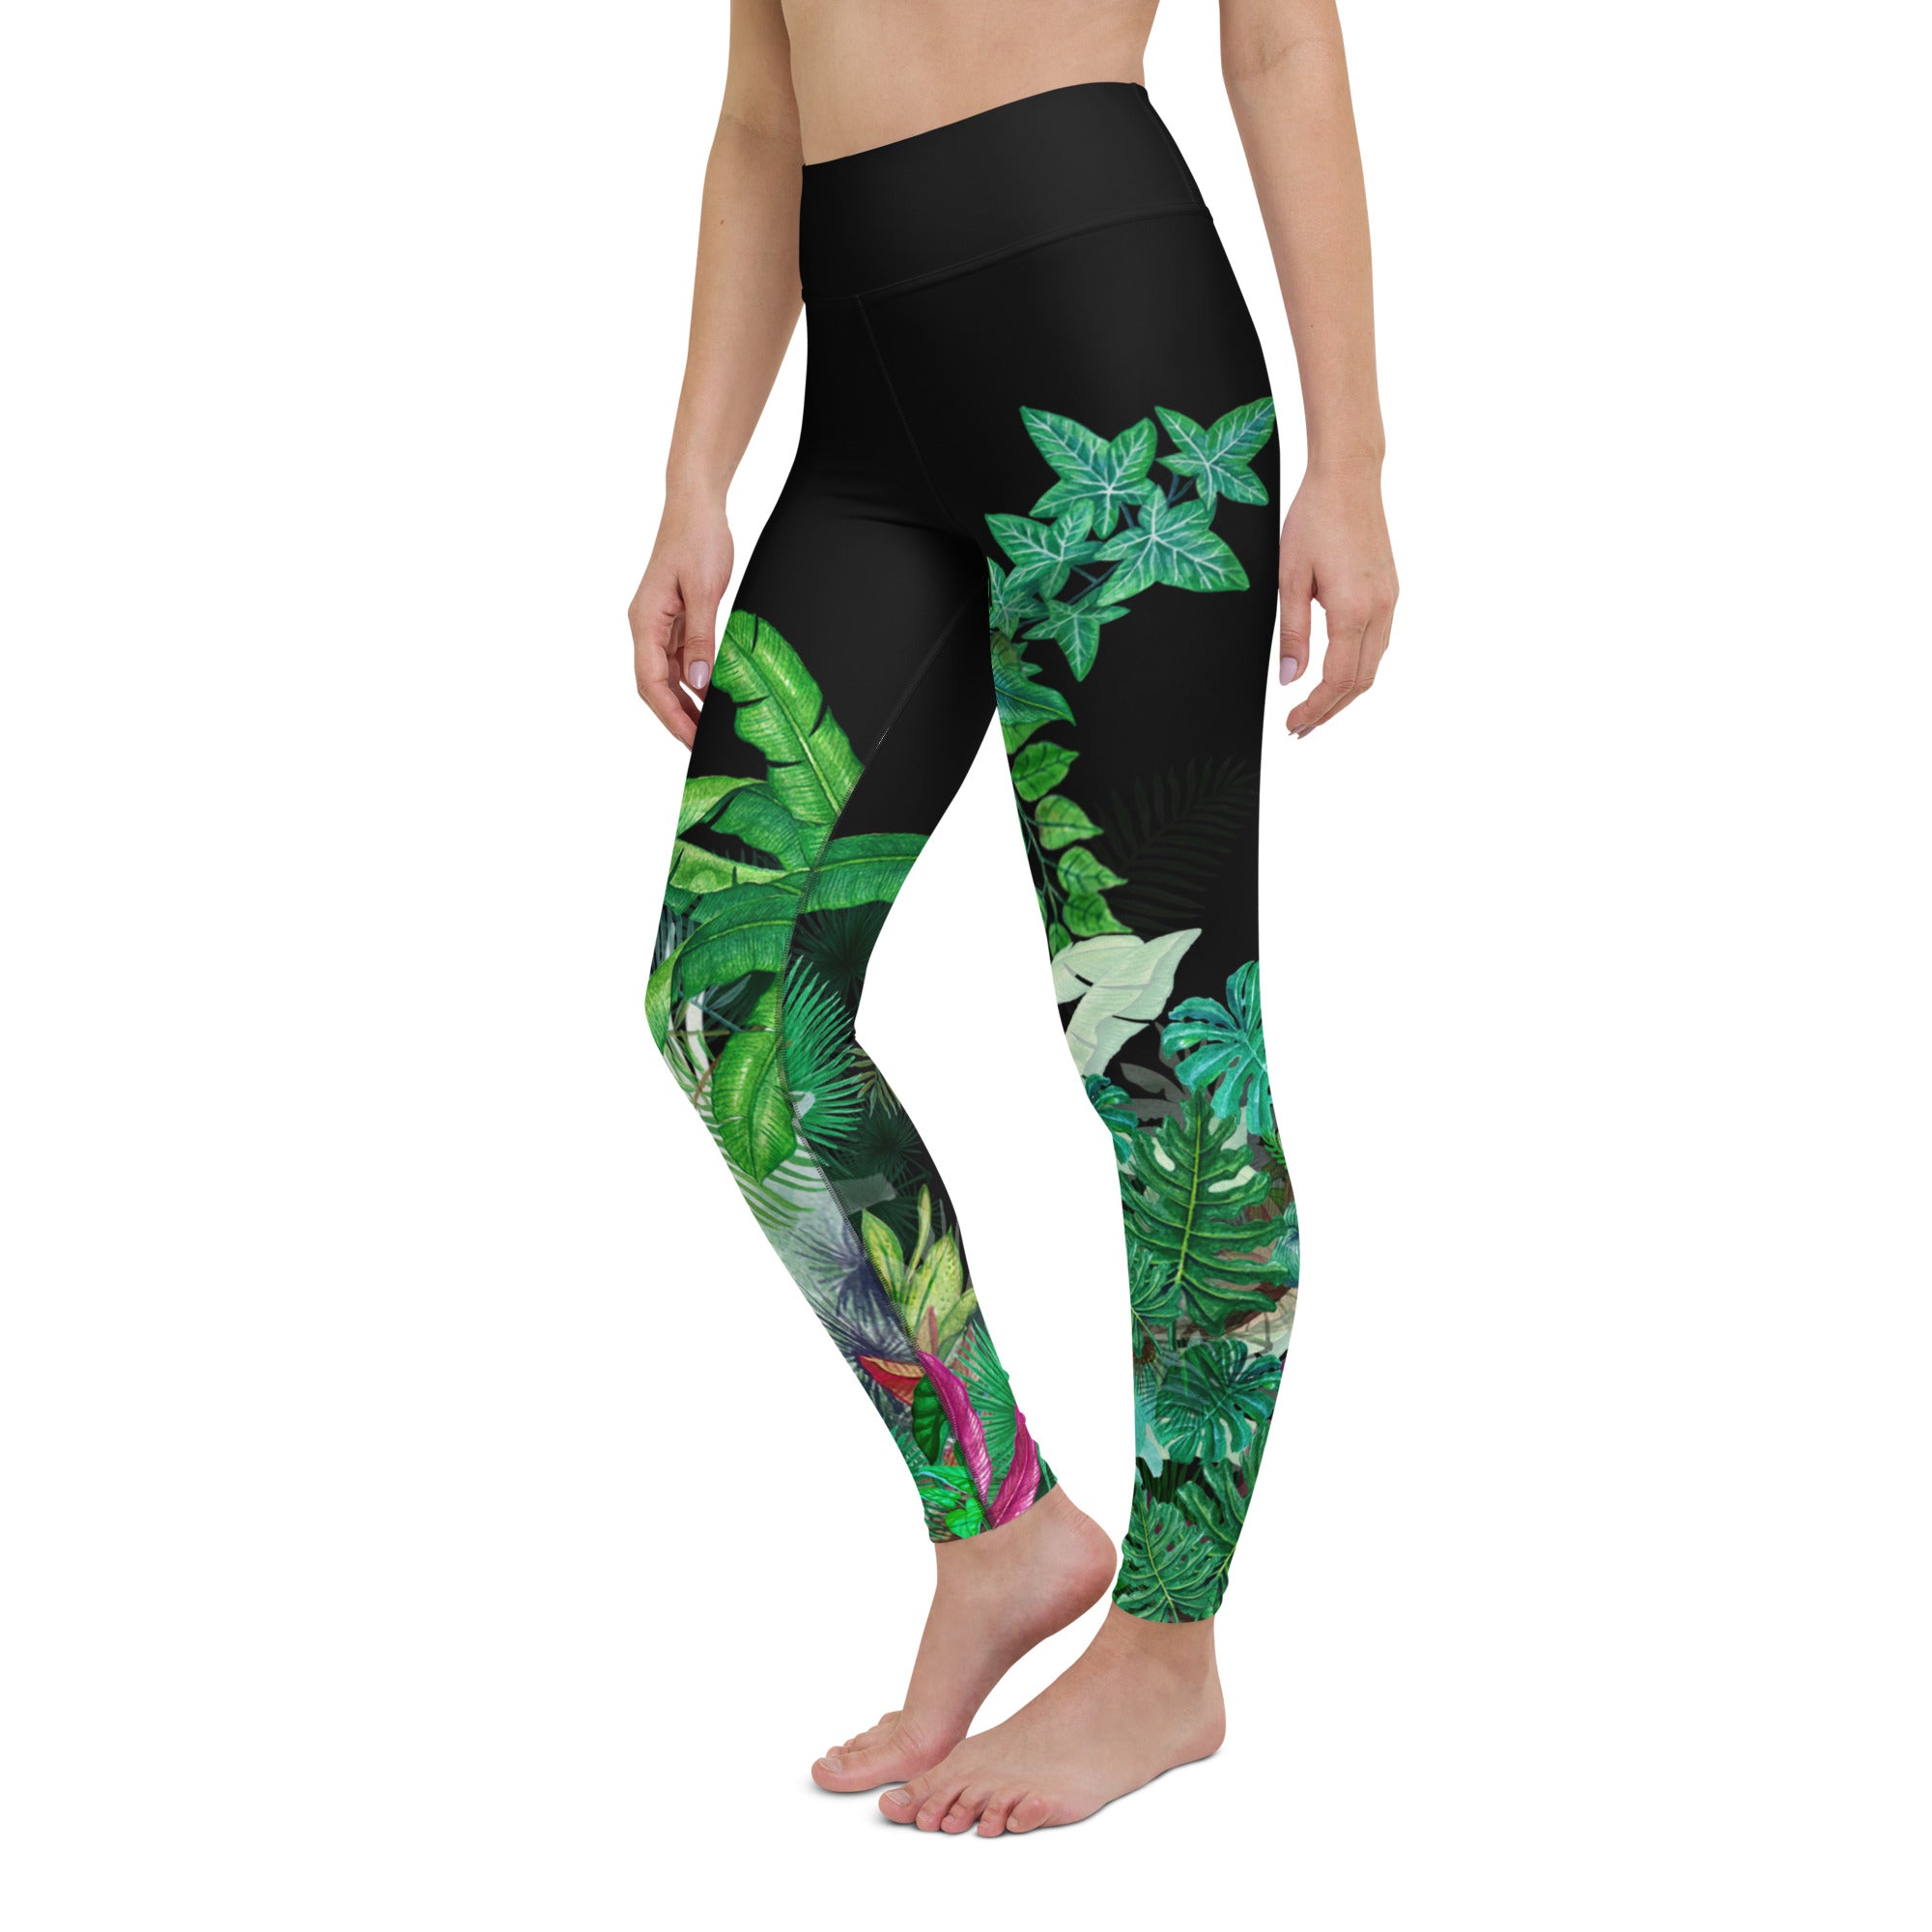 UPF 50 Swim Capri Leggings, Rose Garden Black – Berry Jane™